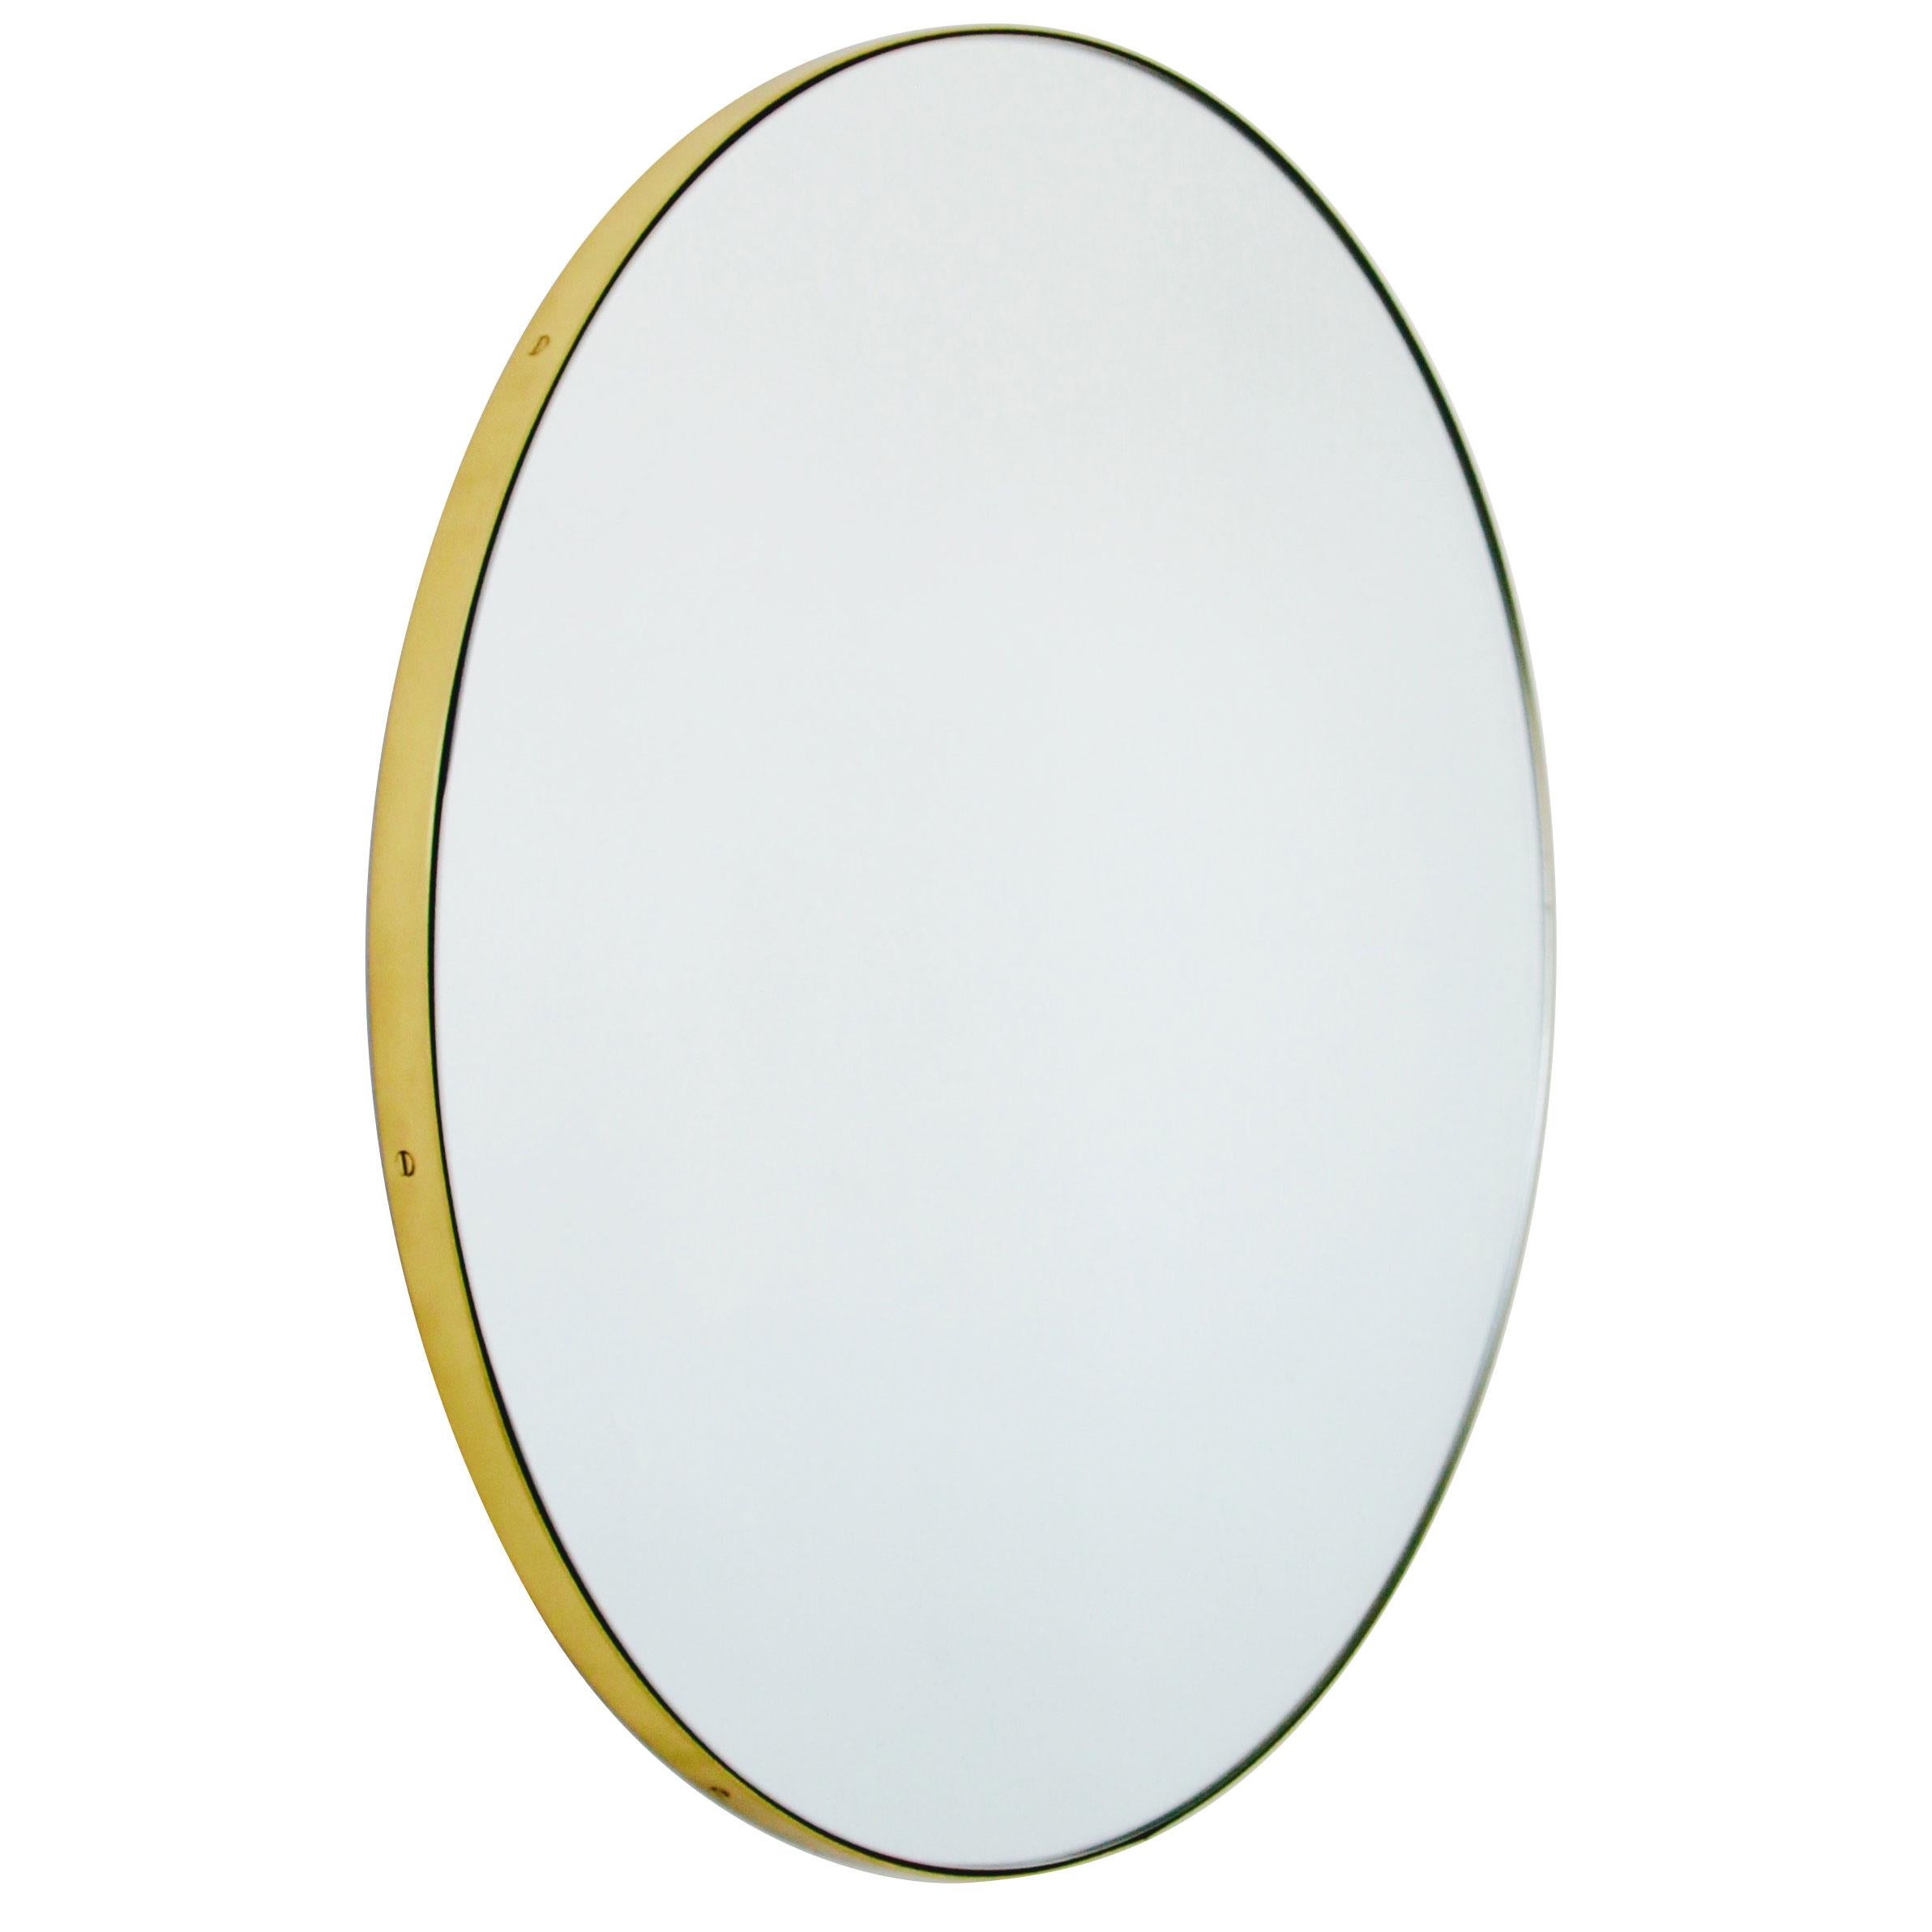 Orbis Round Art Deco Contemporary Mirror with Brass Frame, Regular